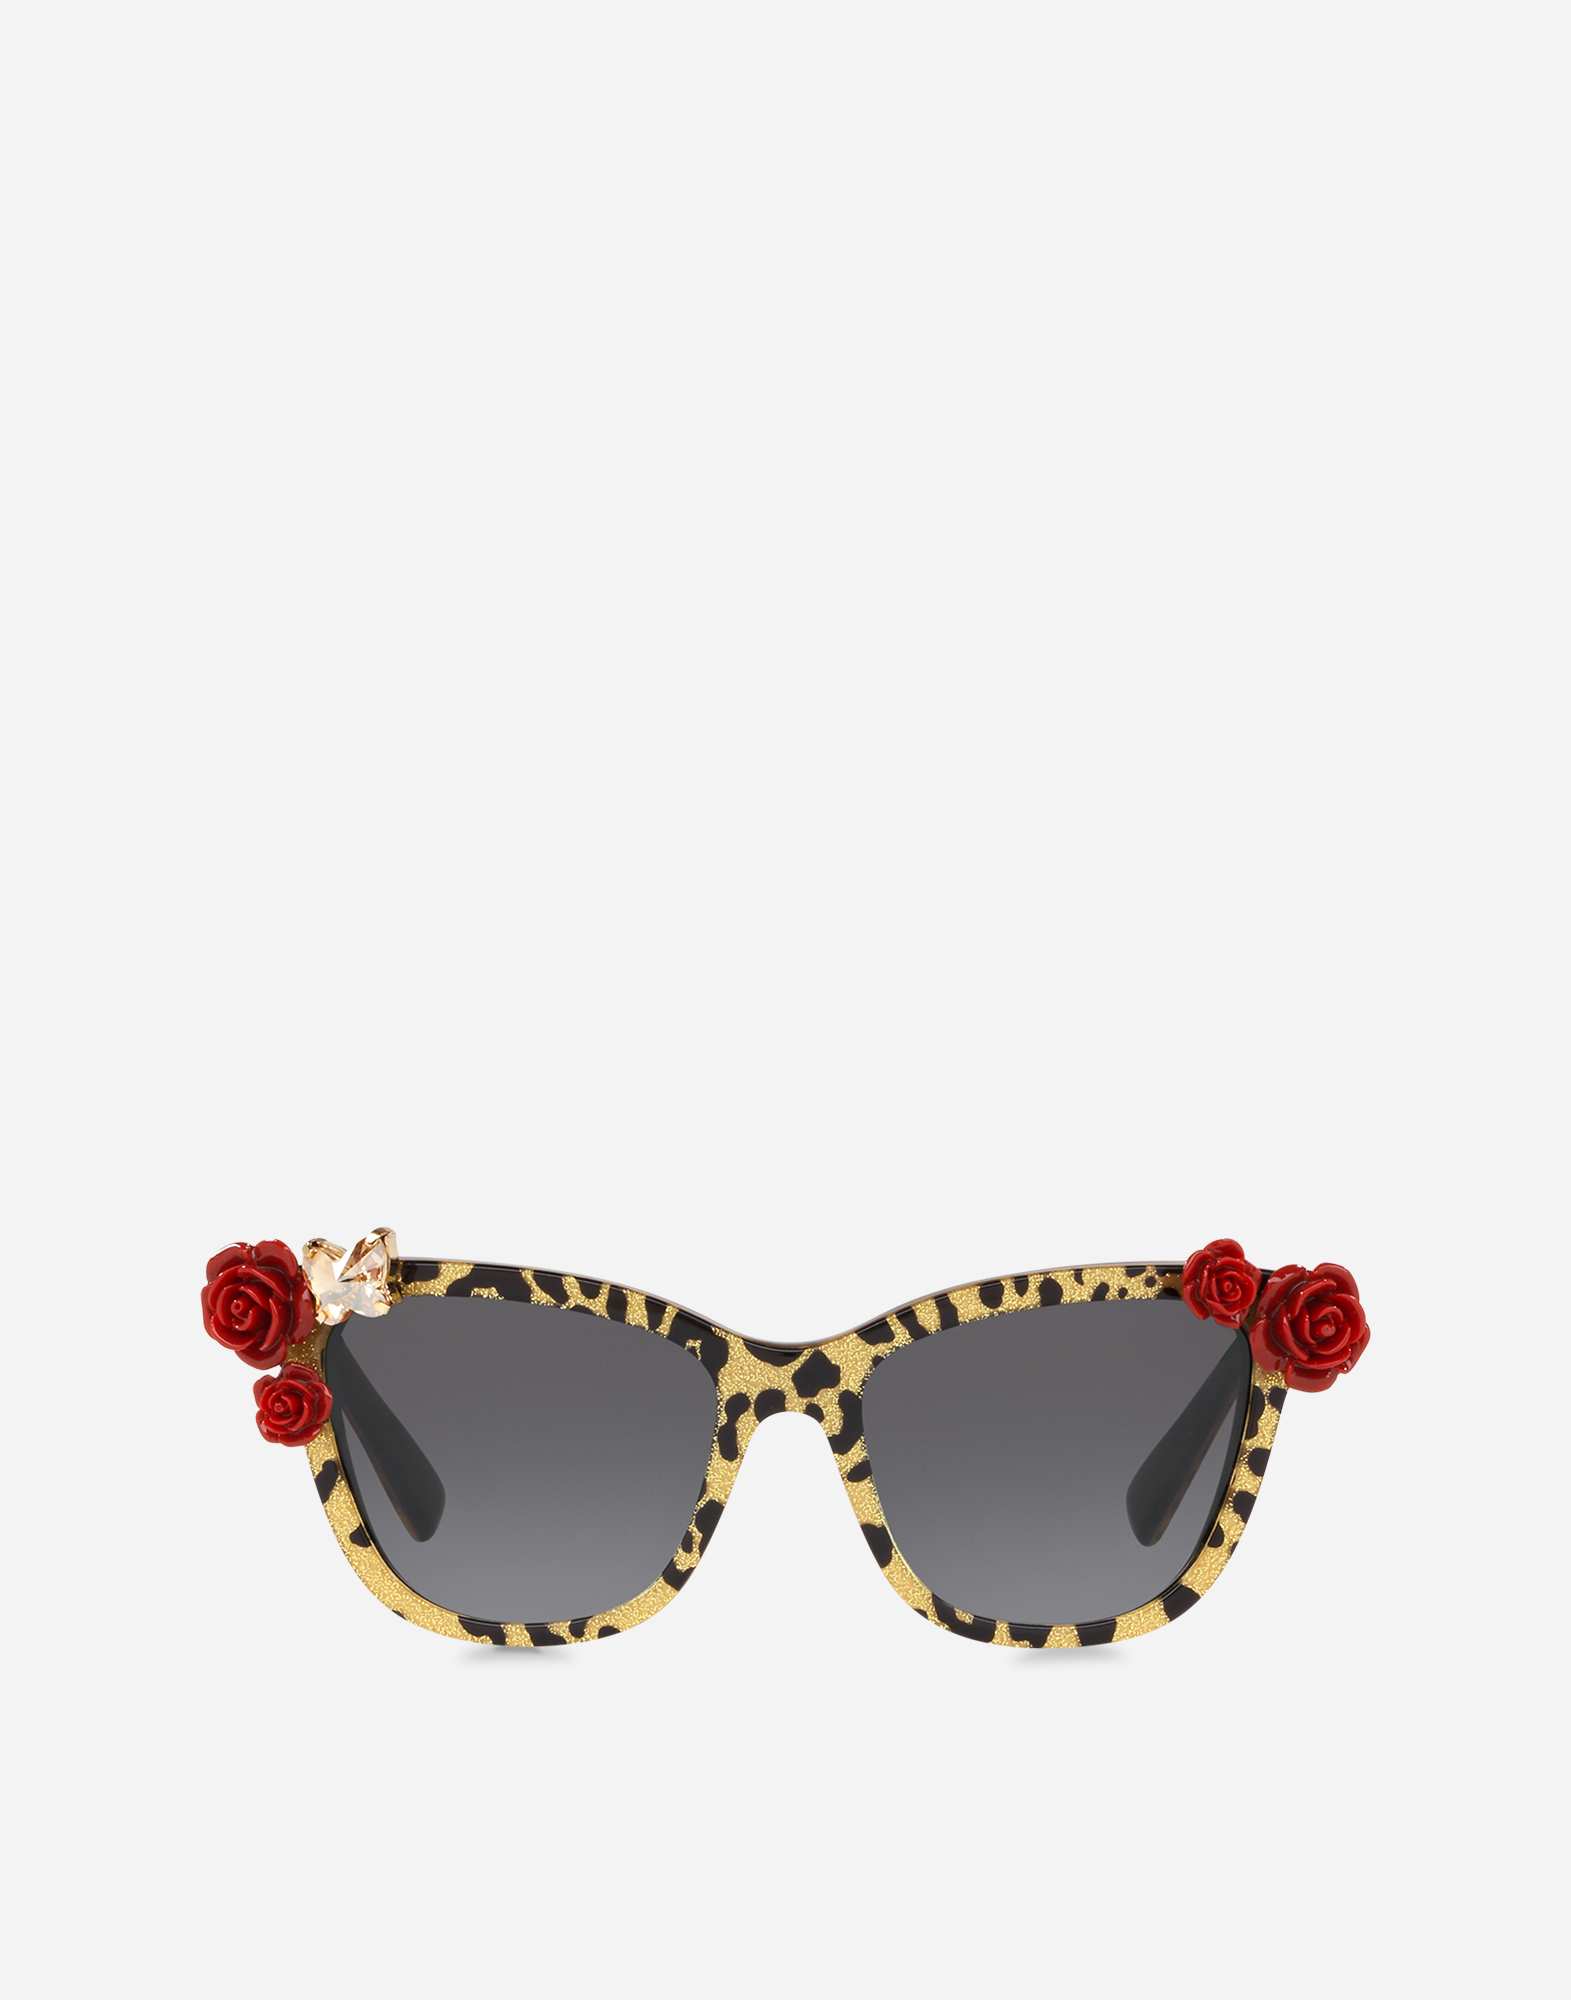 Leo & roses sunglasses in Leopard Print / Gold Glitter